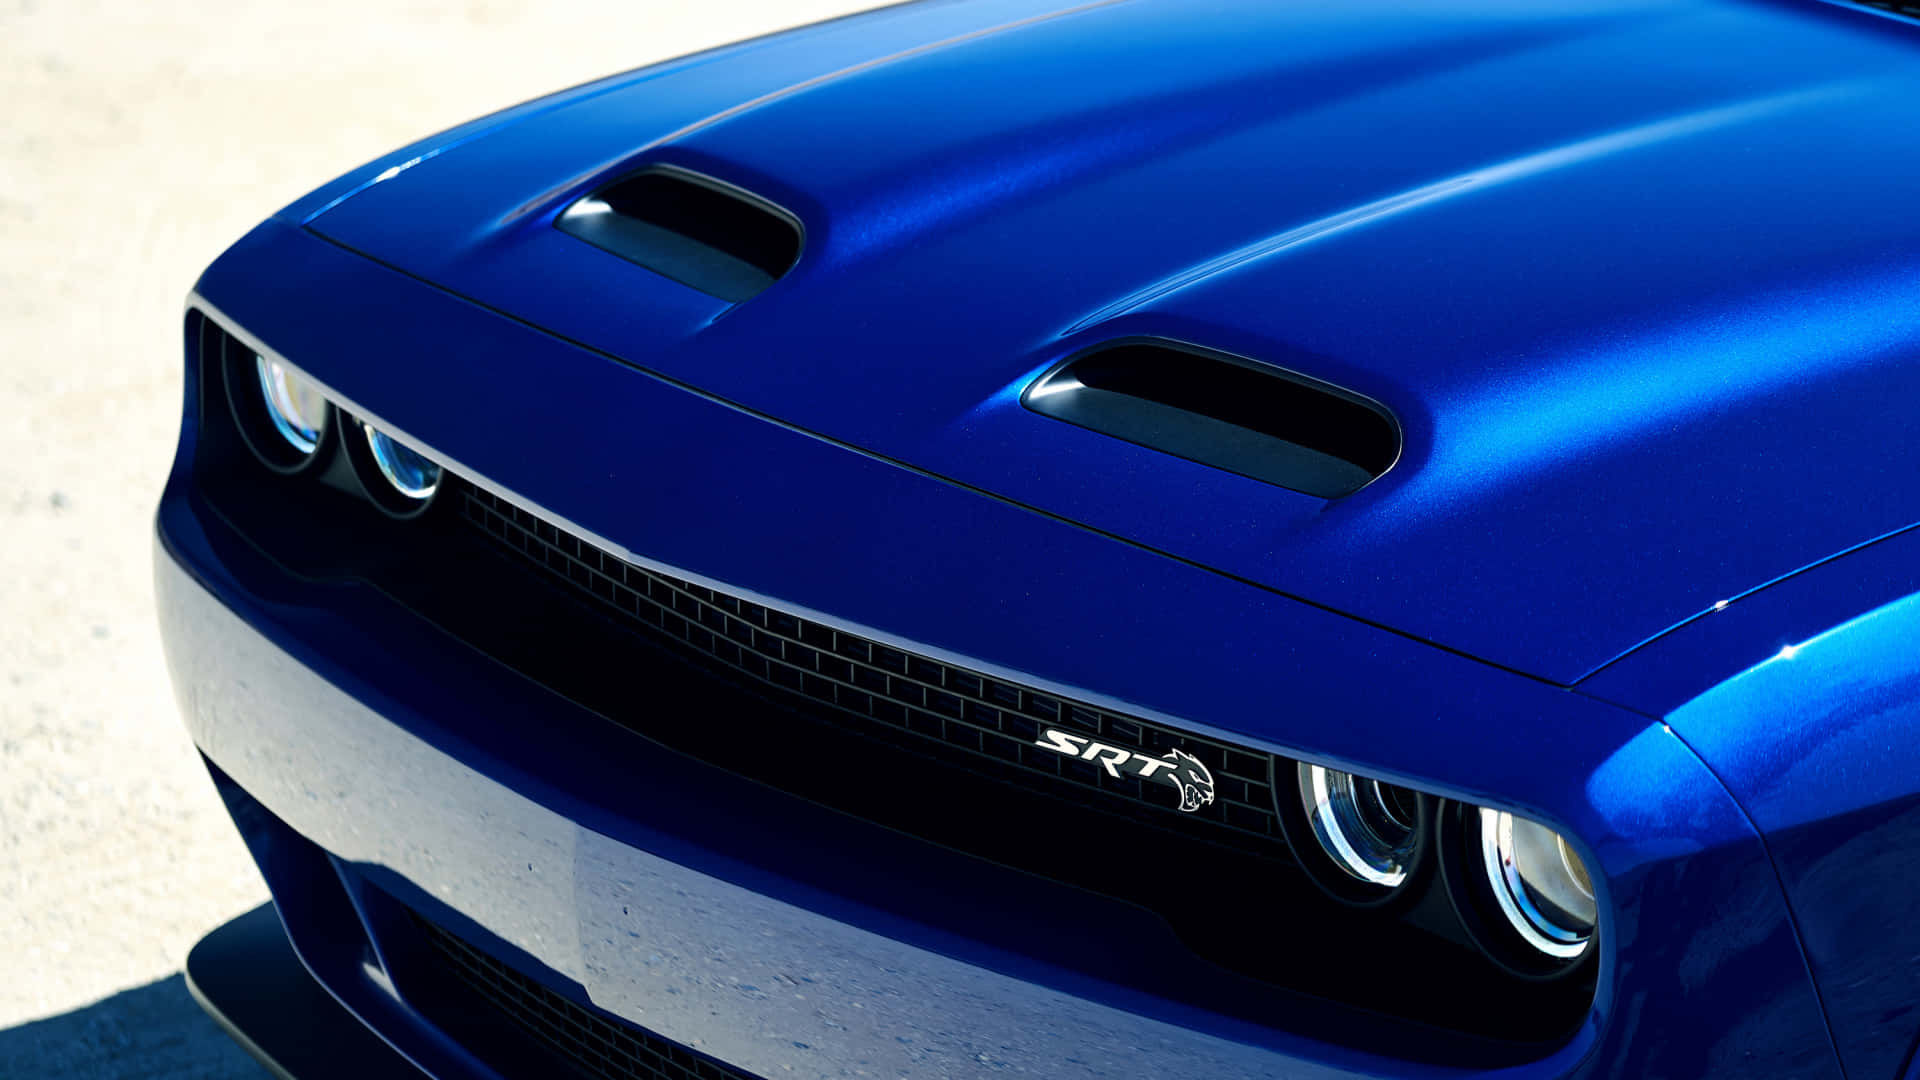 Feel the power in the Dodge Challenger SRT Hellcat Wallpaper